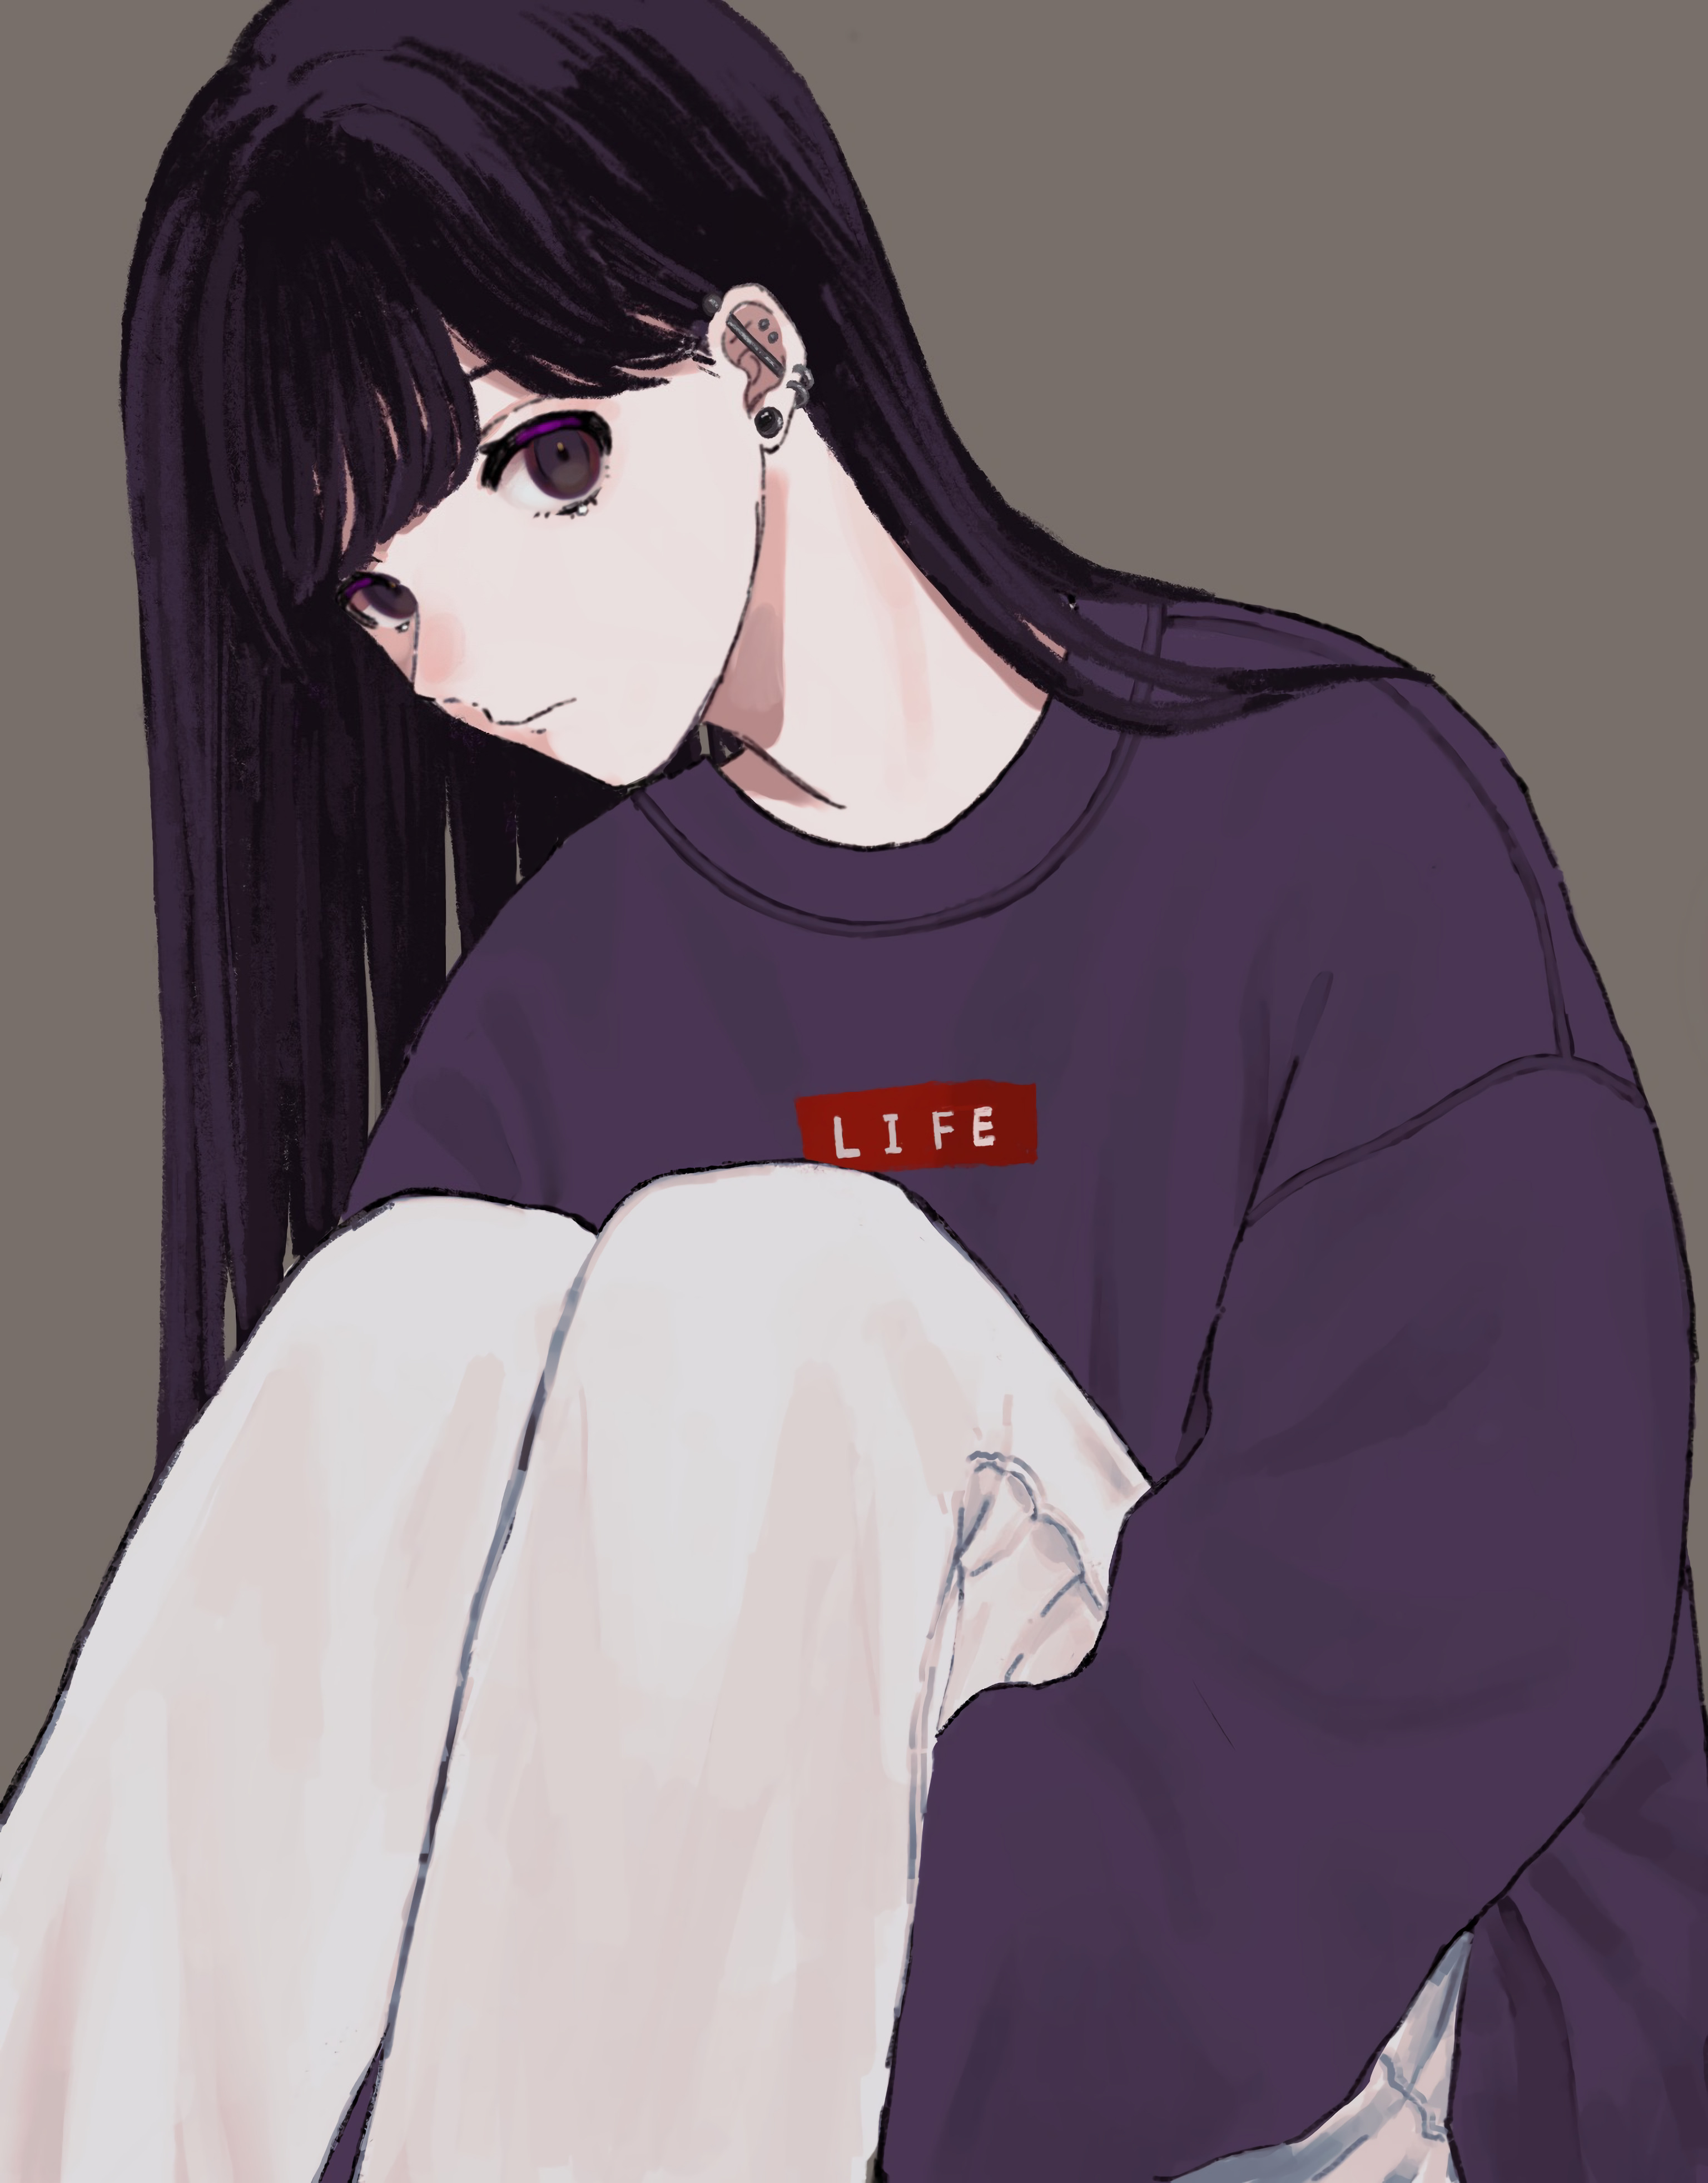 Girl Glance Sweatshirt Anime